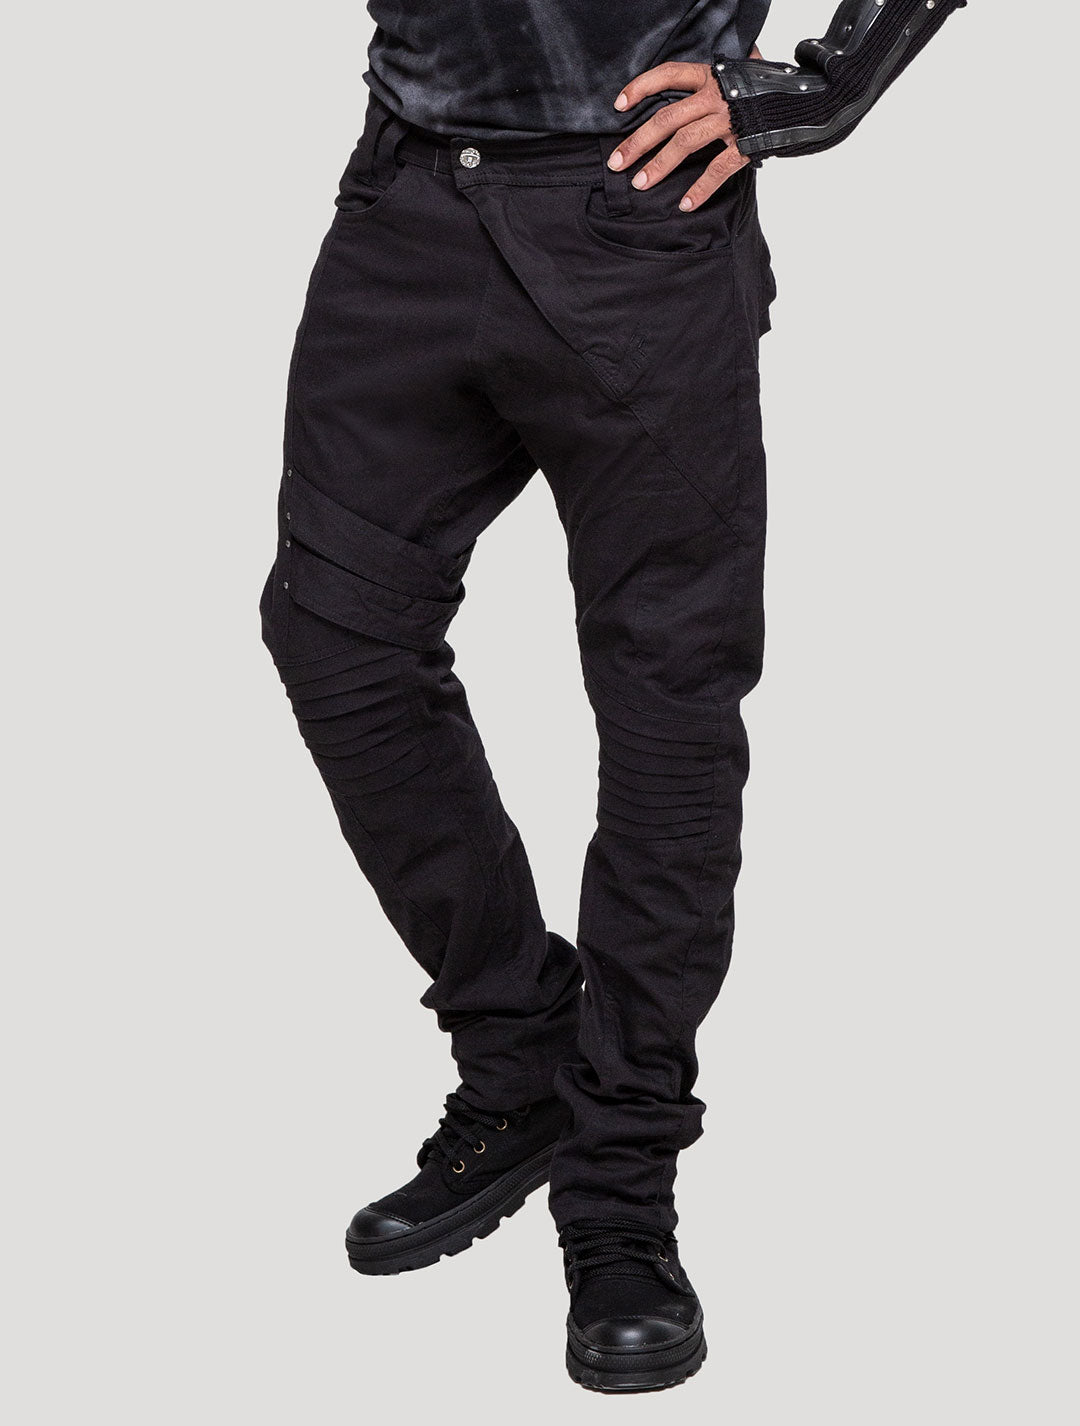 Black Lipat Pants - Psylo Fashion